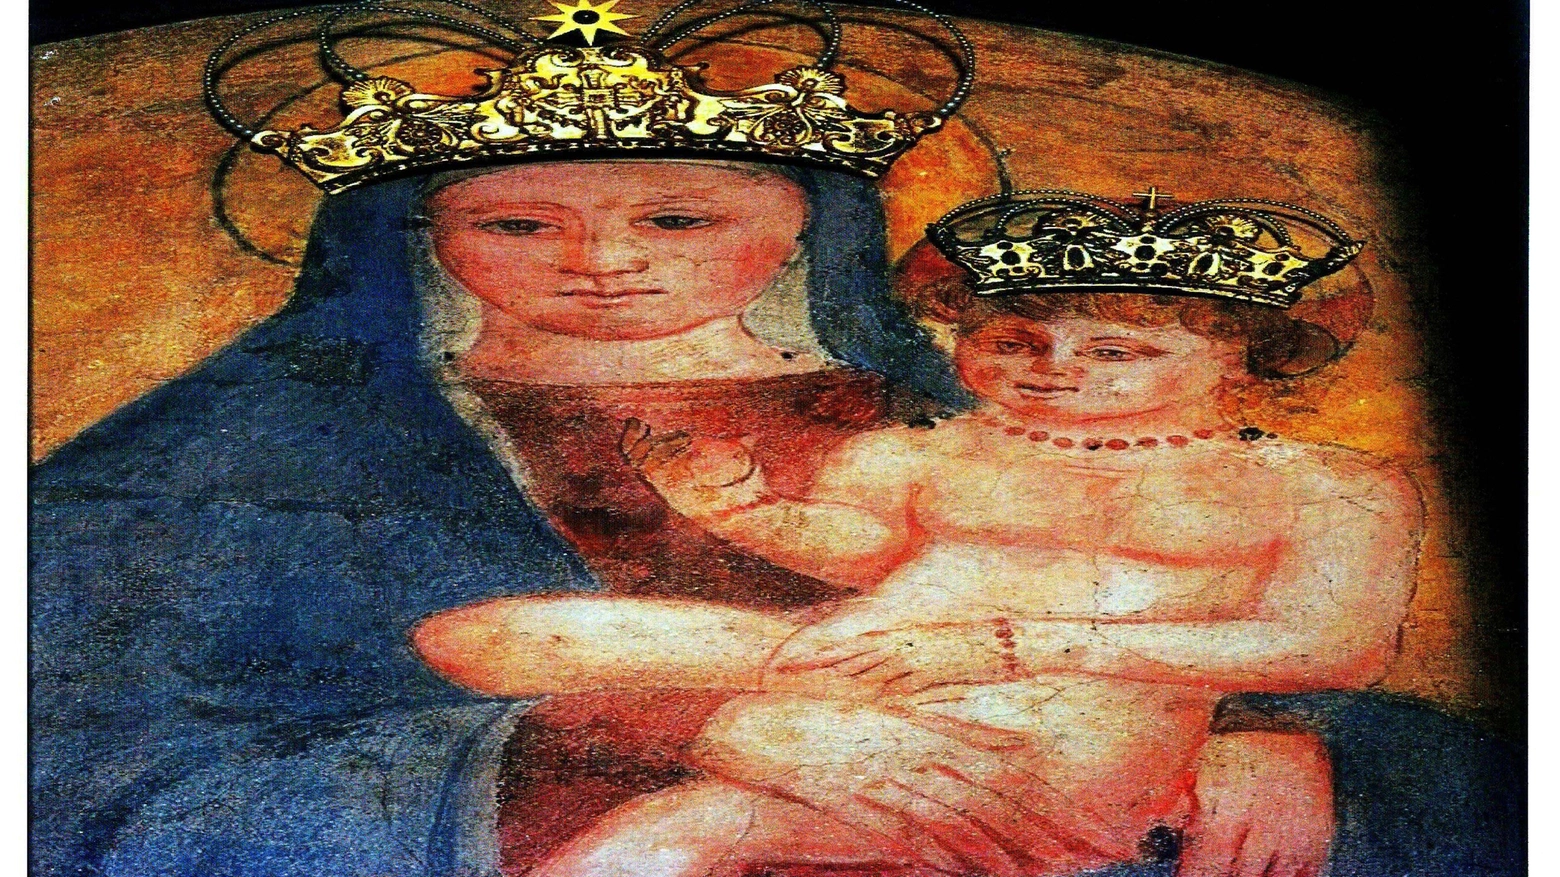 Il quadro della Madonna delle Grazie e del Bambin Gesù preso di mira dai ladri